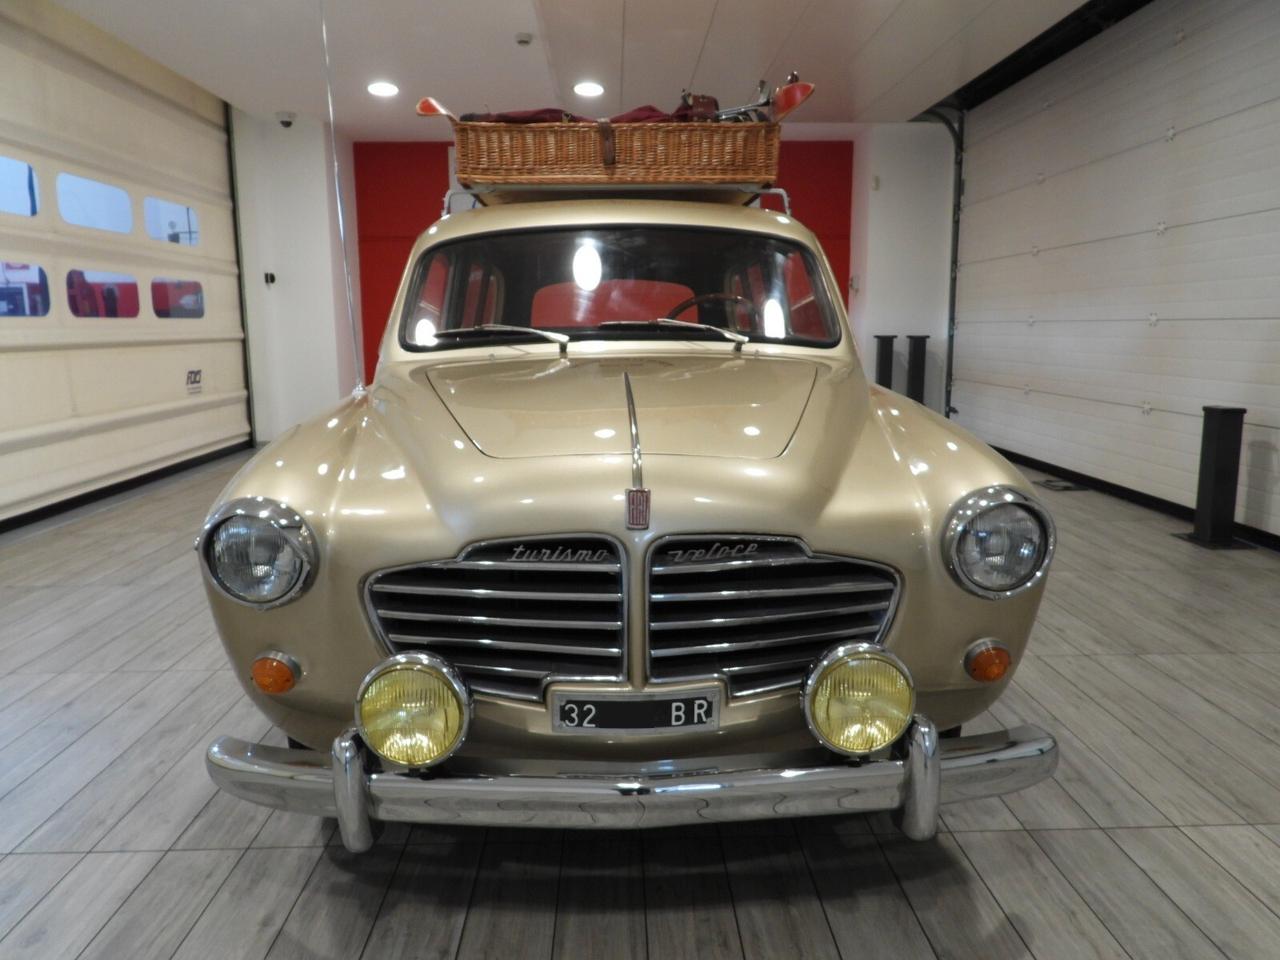 FIAT 1100 103 TV (TURISMO VELOCE) GIARDINETTA VIOTTI CAMBIO AL VOLANTE ”COUNTRY CLUB ST. MORITZ SINCE 1956” (1954)